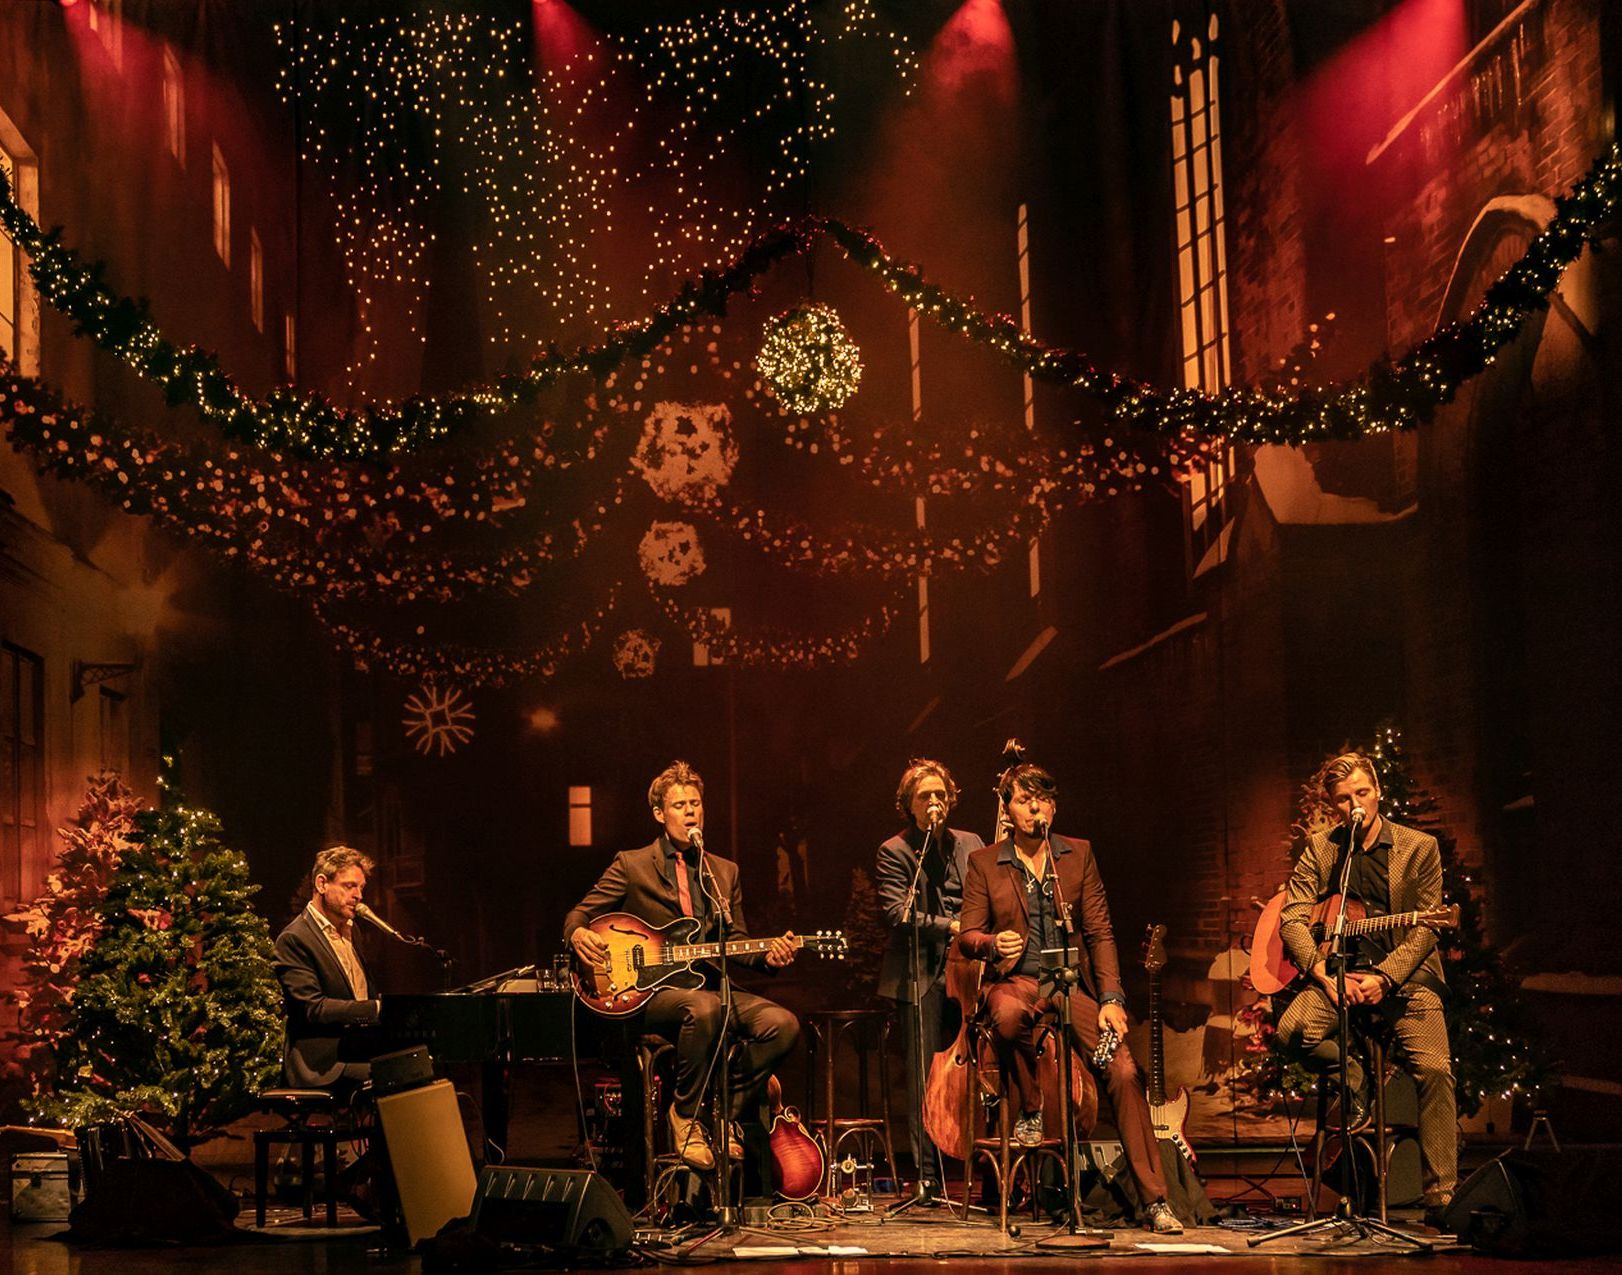 De 3JS staan in de mooiste theatermaand van het jaar op de planken van De Tamboer. Speciaal voor deze editie voegt multi-instrumentalist Emil Szarcowicz zich bij het gezelschap. Na deze Christmas-show bent u pas echt klaar voor de kerst.